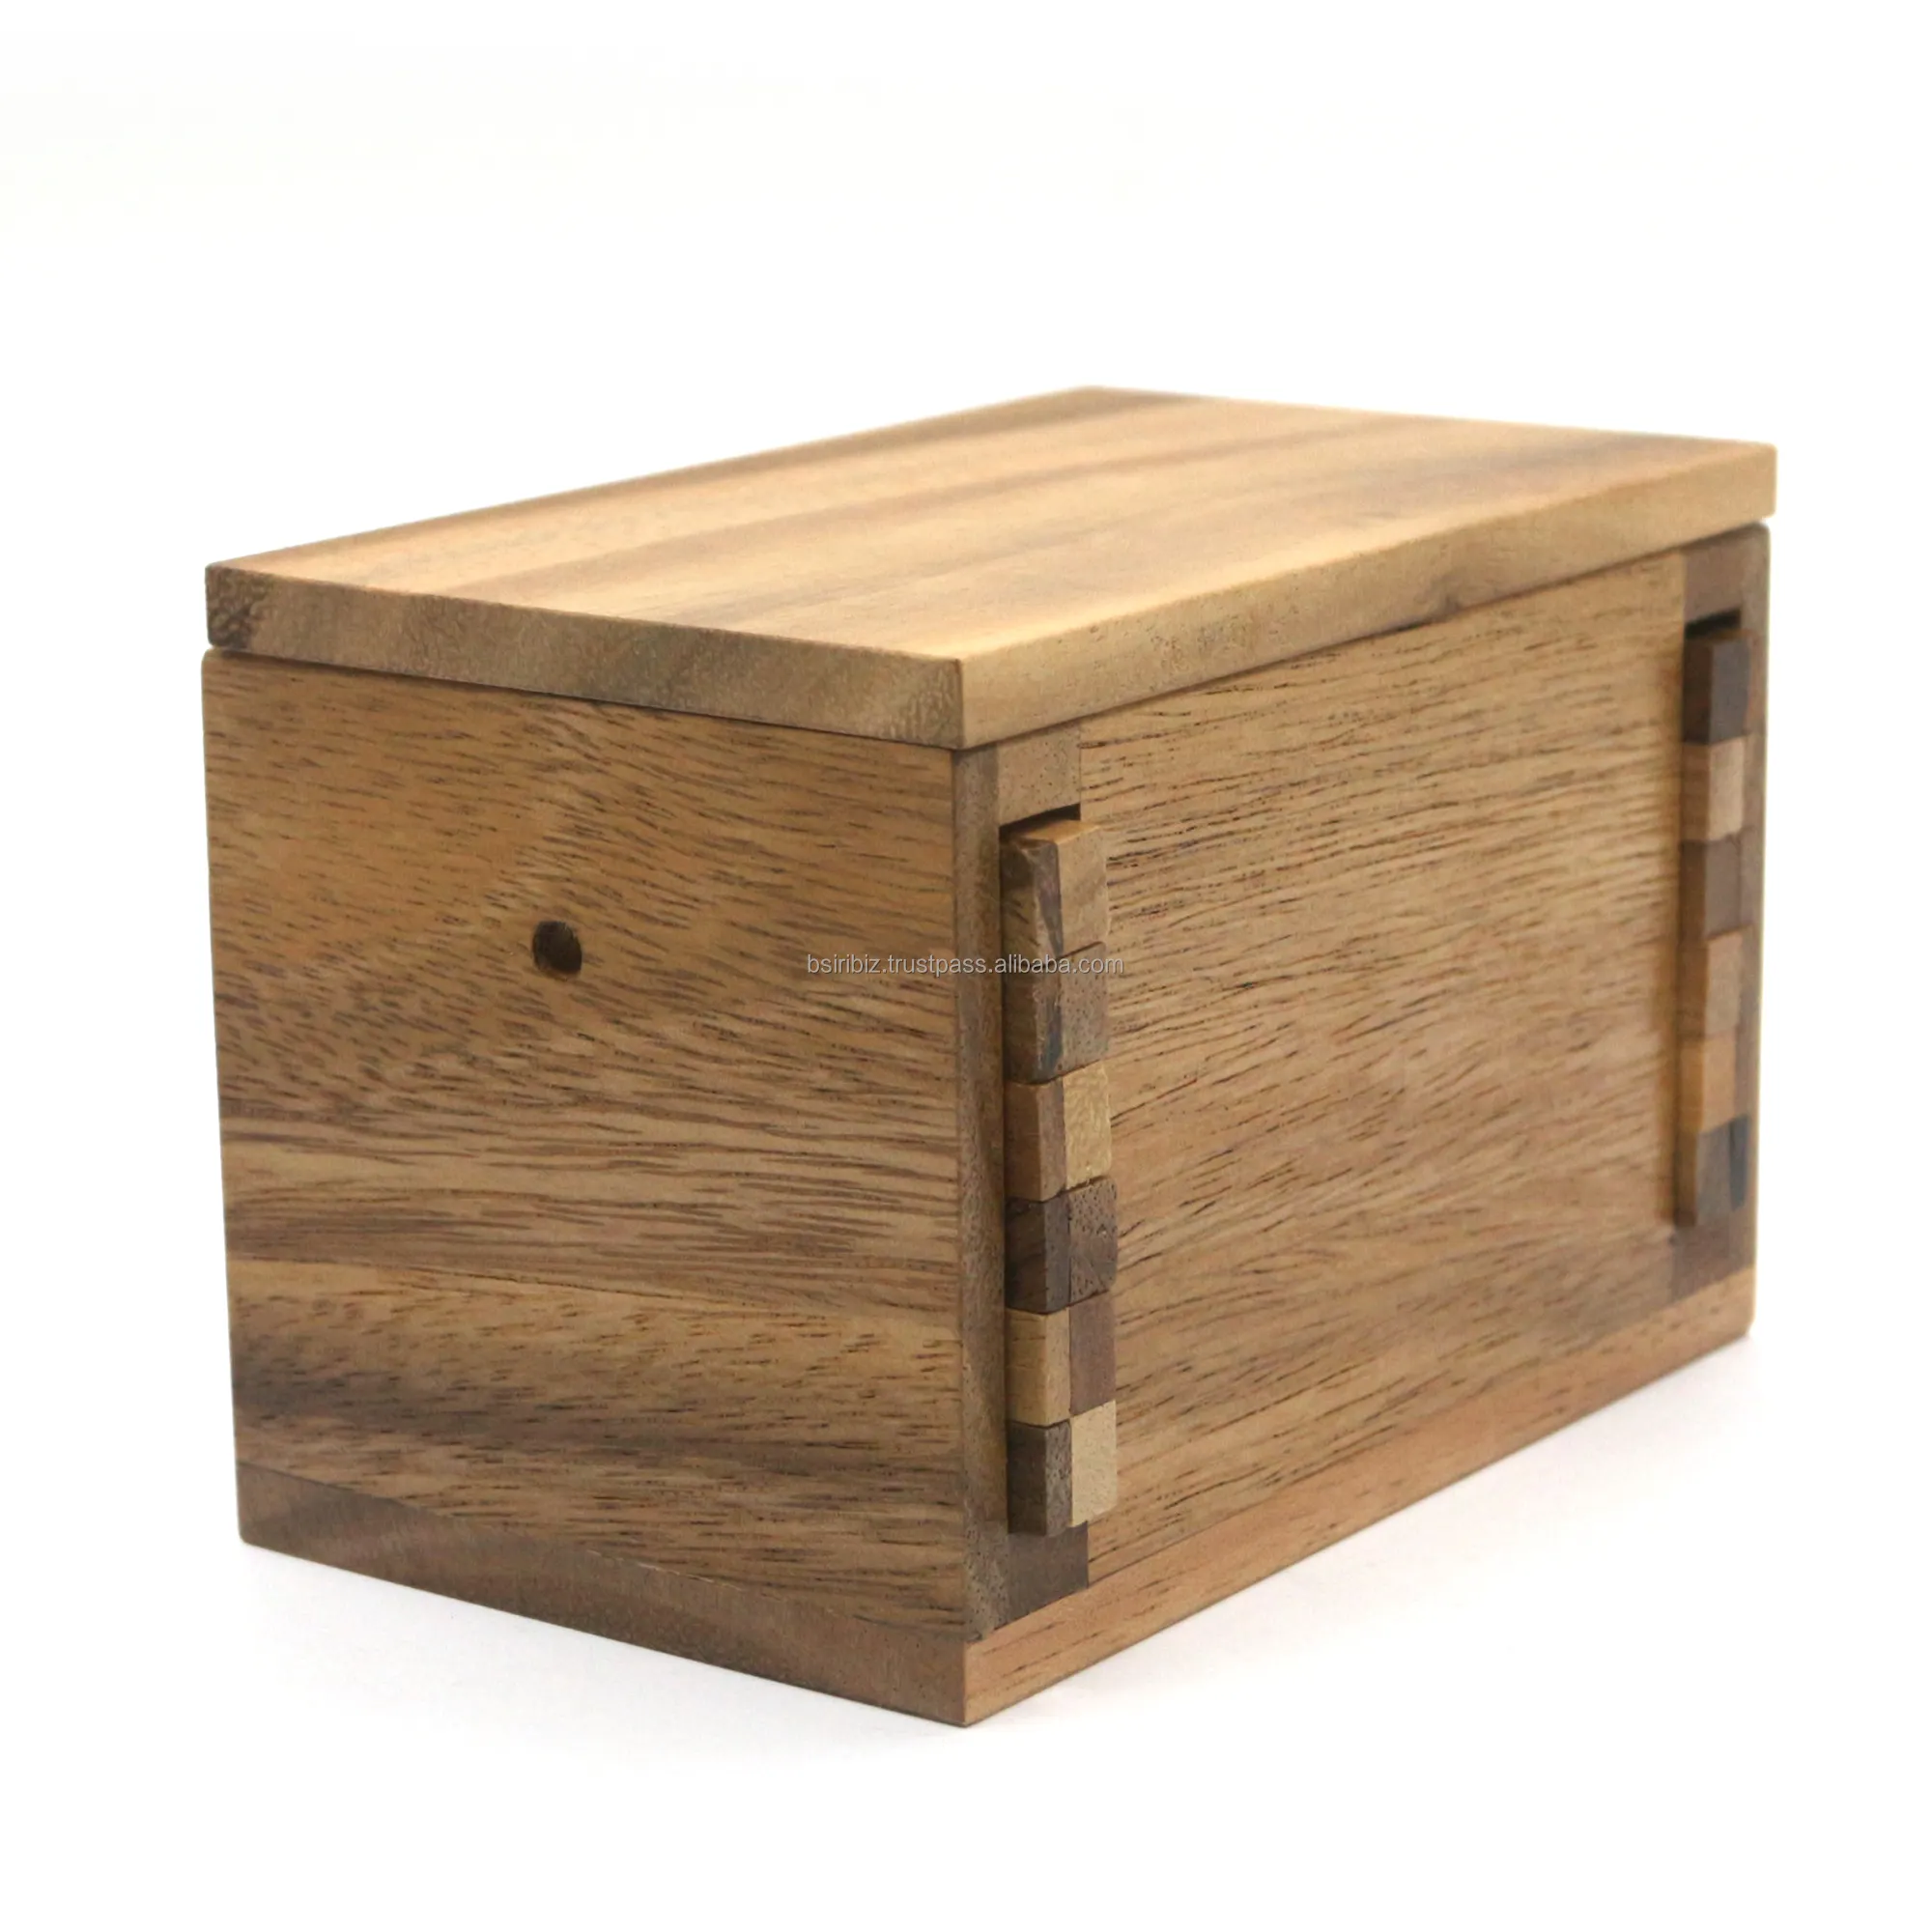 Ein Brain Teaser fordert Money Box Puzzles mit Secret Lock Wooden Designs heraus